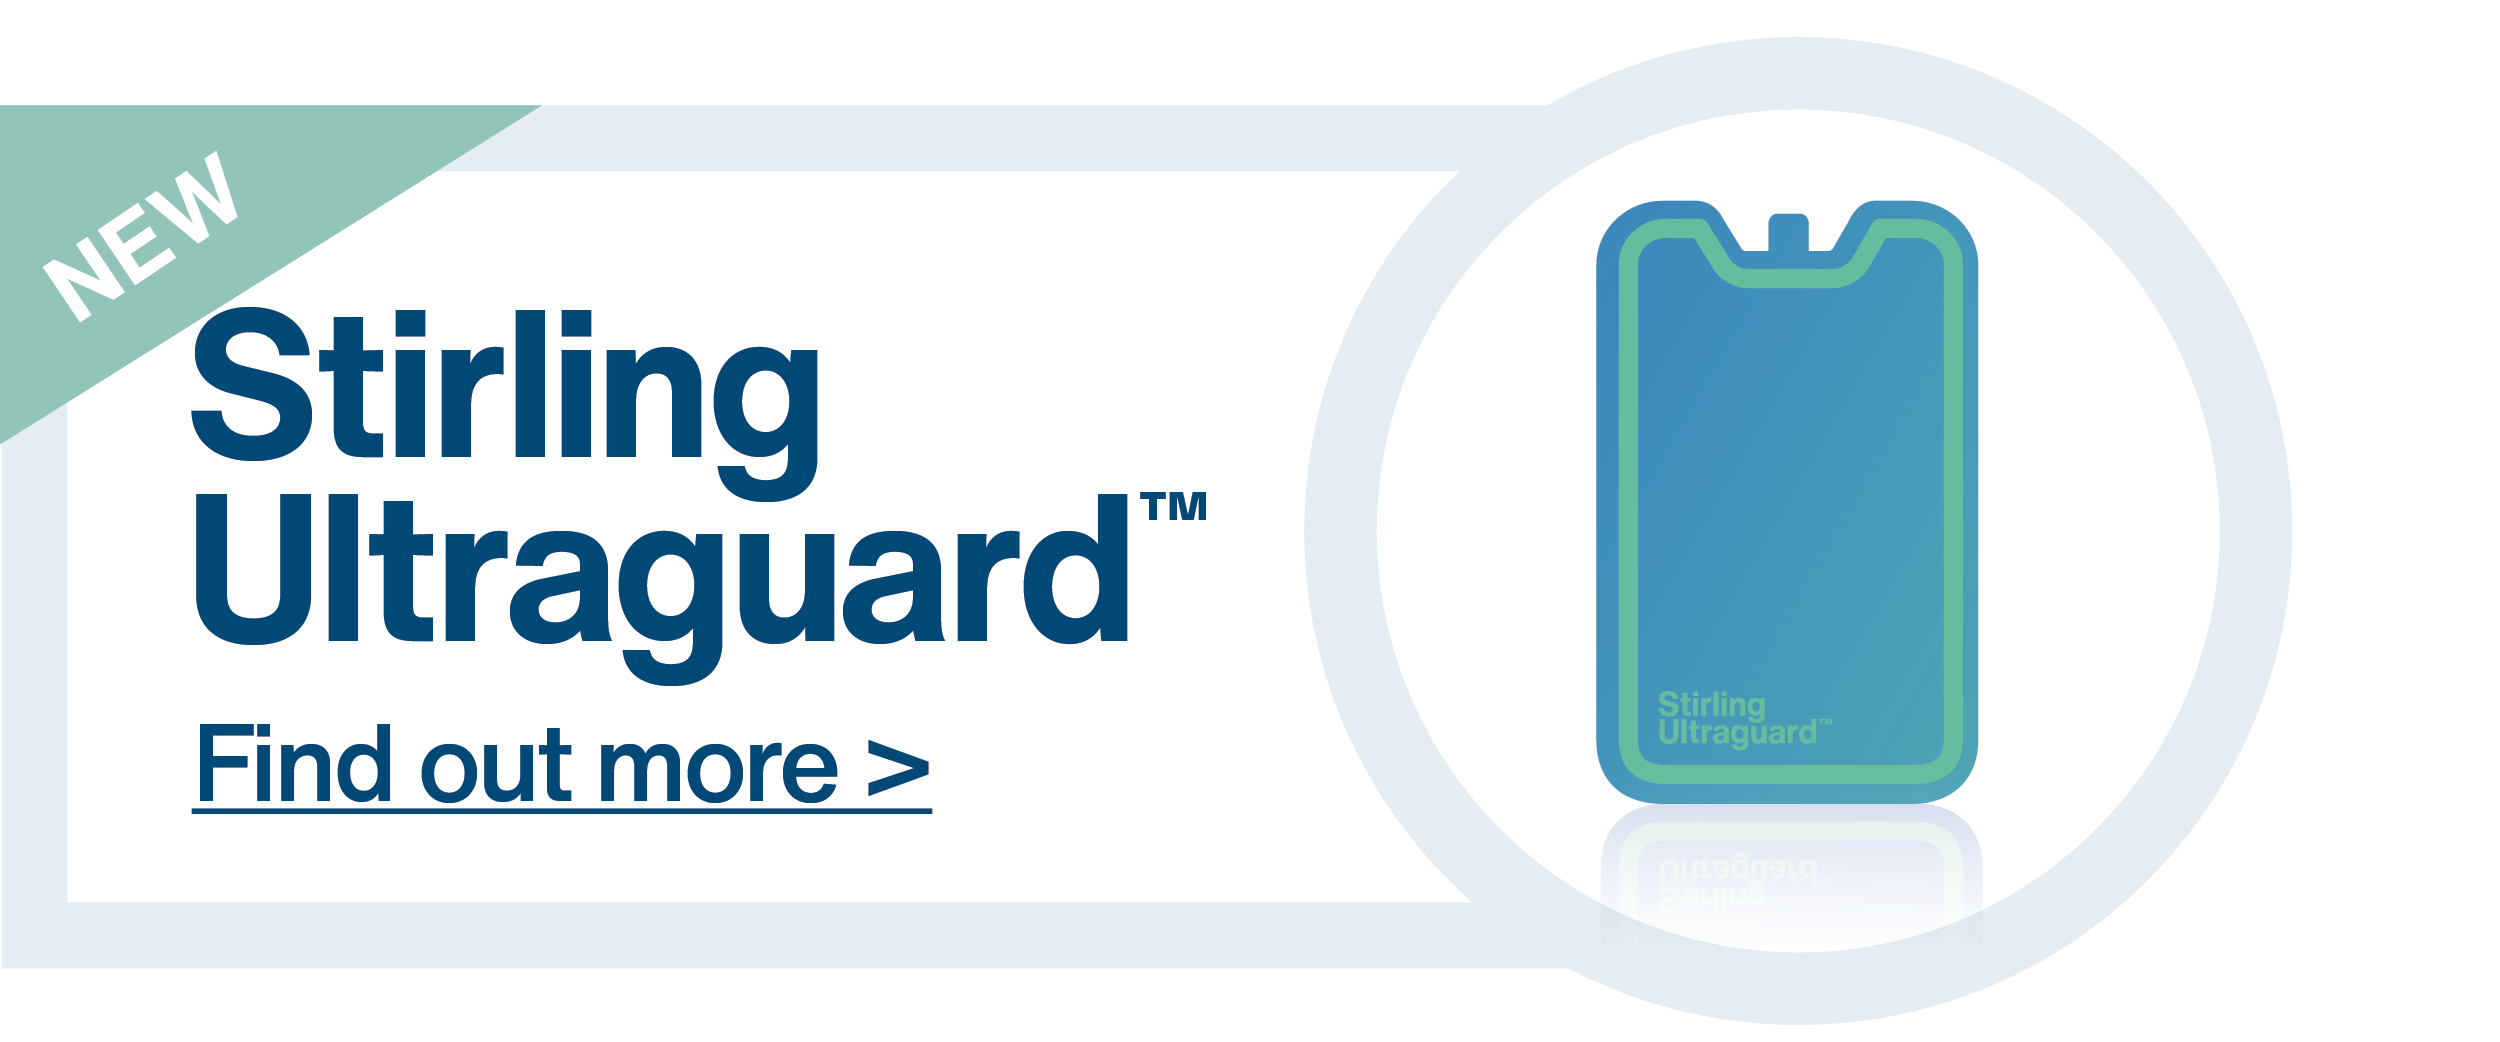 Stirling Ultraguard PCM